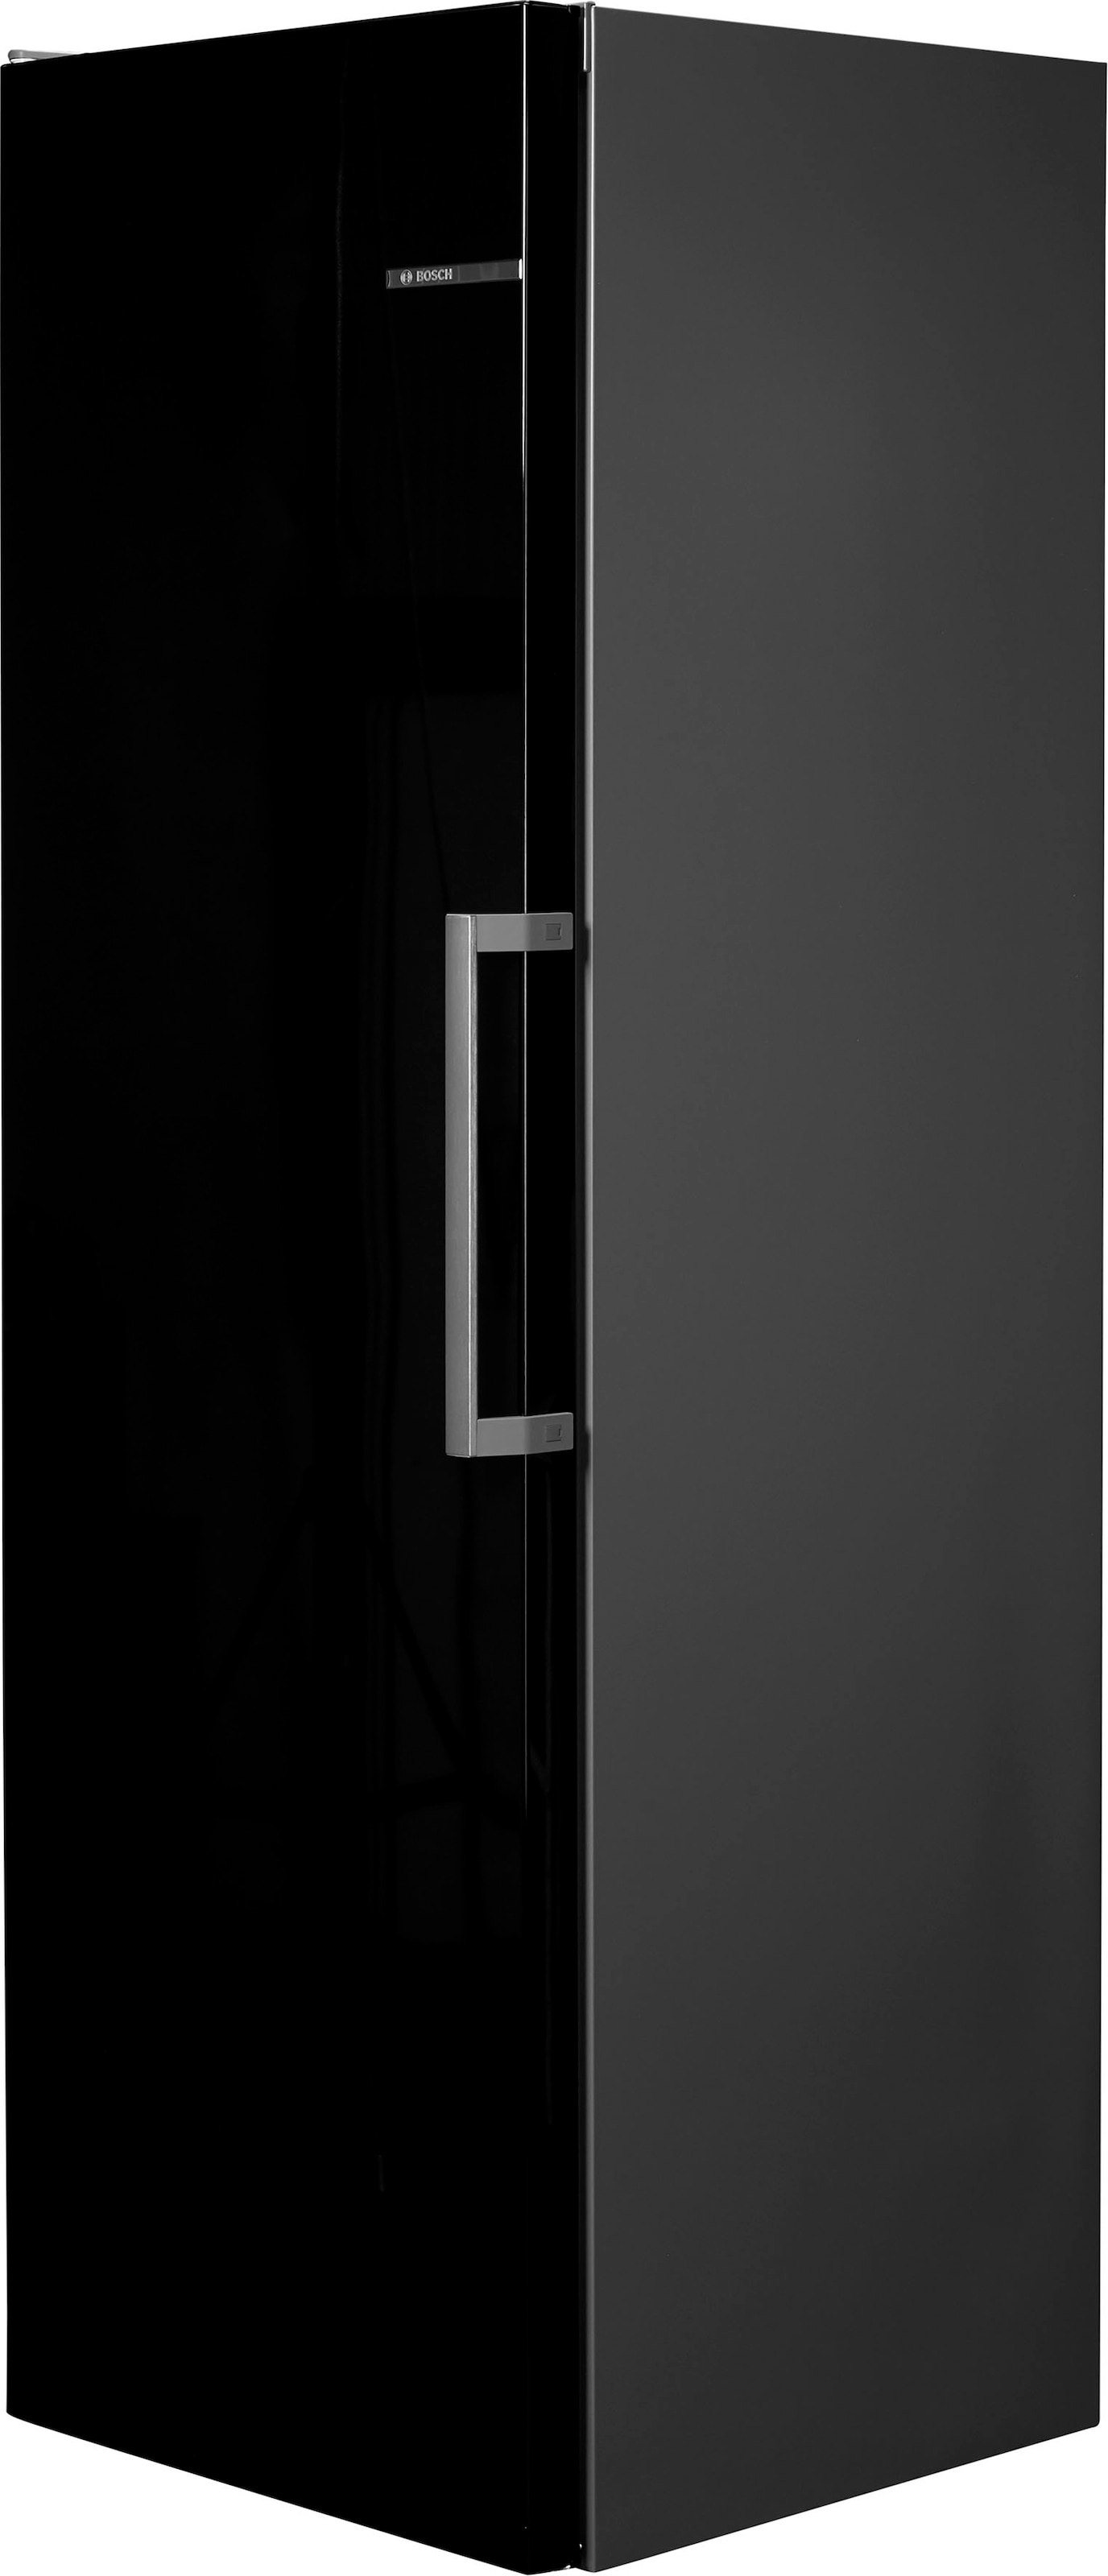 BOSCH Kühlschrank »KSV36VBEP«, KSV36VBEP, 186 cm hoch, 60 cm breit  bestellen bei OTTO